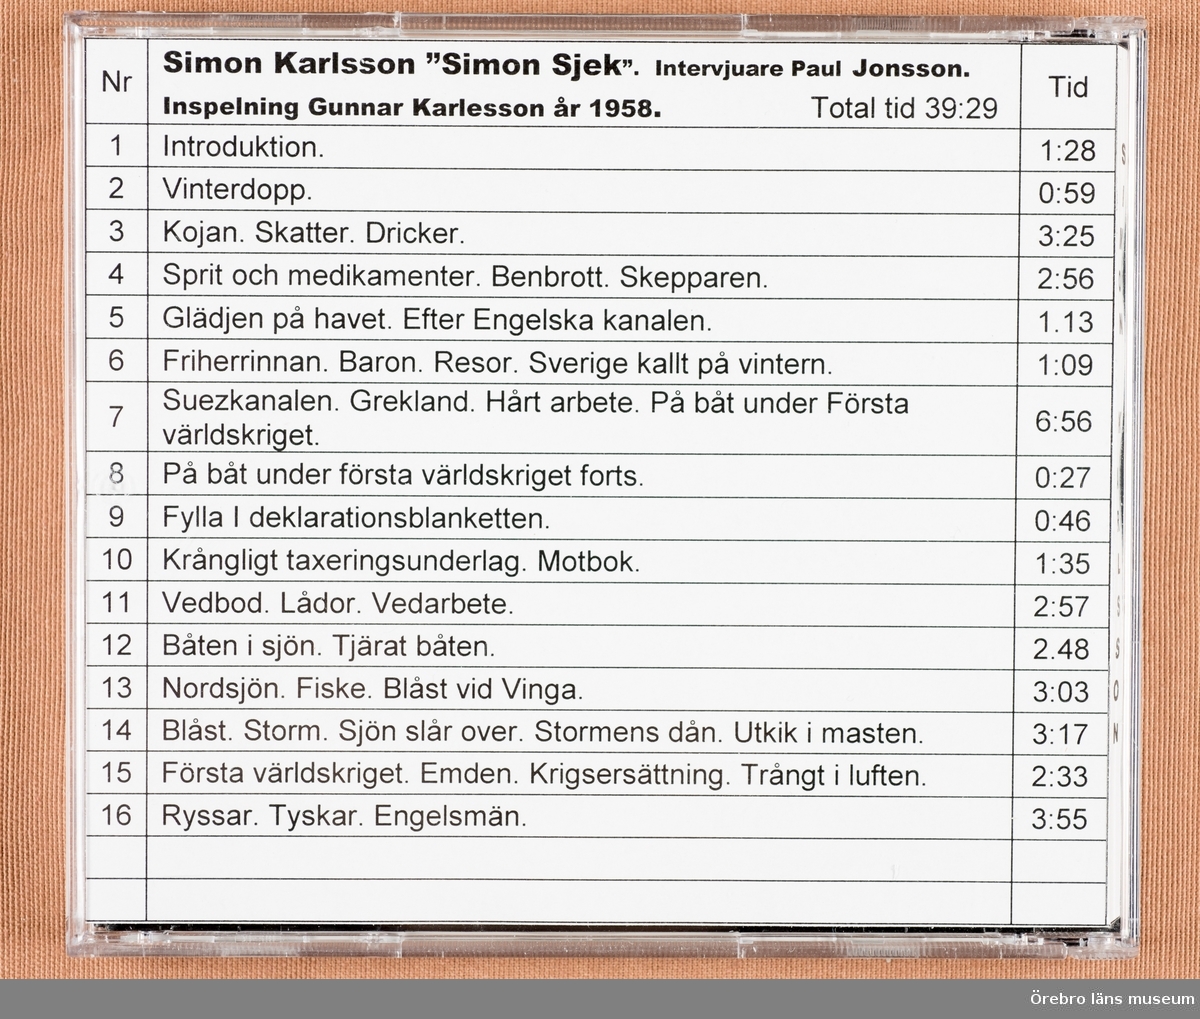 Siomon Karlsson "Simon Sjek"
Intervjuvare: Paul Jonsson.

Inspelning Gunnar Karlesson år 1958 på Bo Hjortkvarns kontor.
Migrerat till digitalt år 2012.